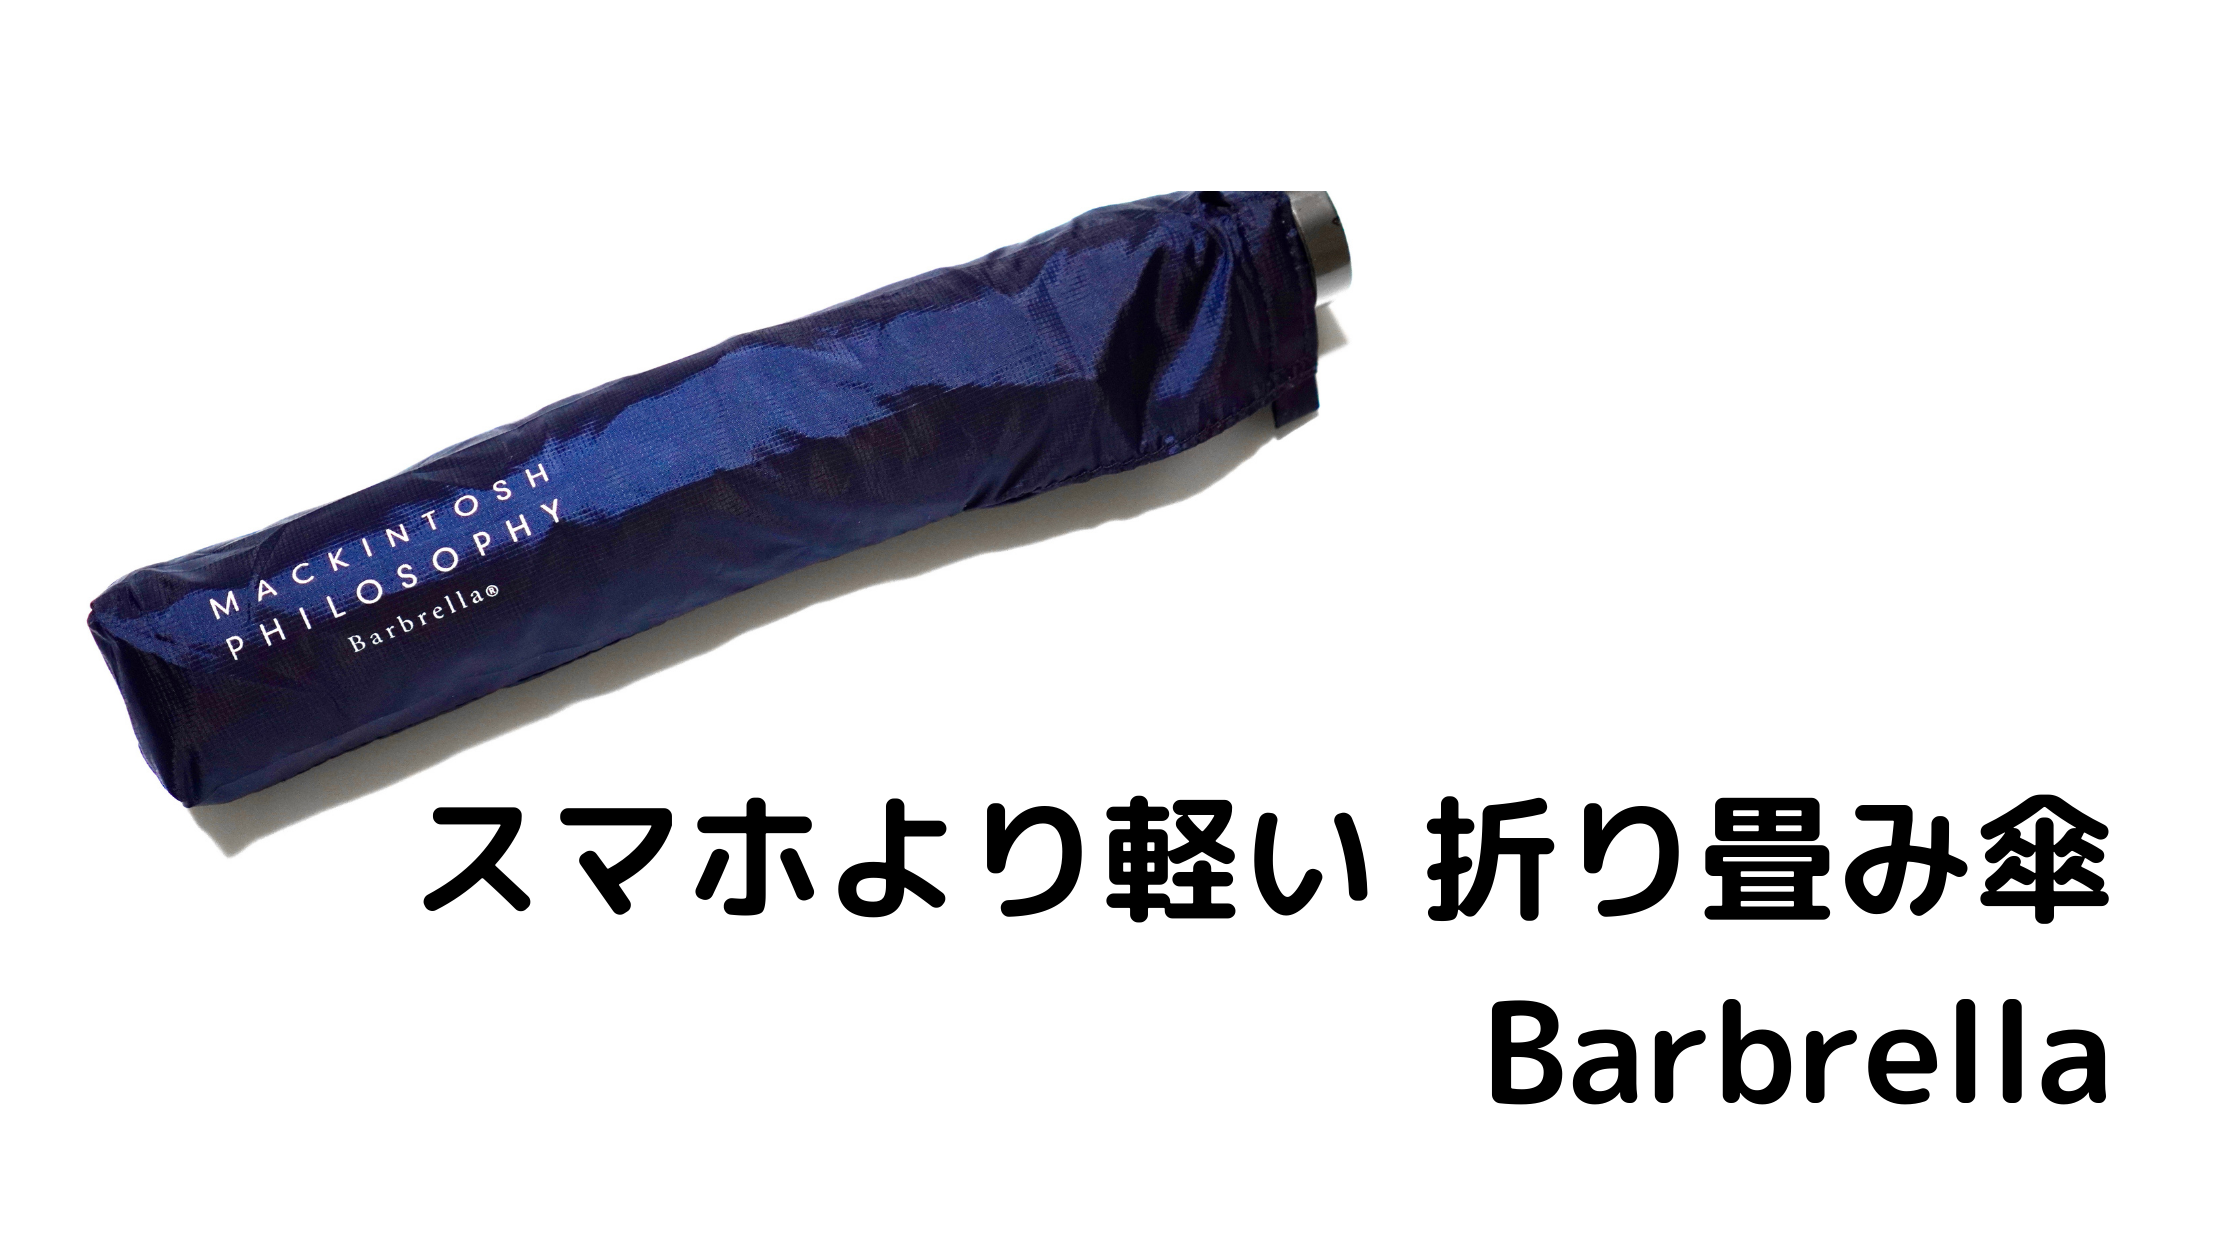 スマホより軽い 折り畳み傘 Barbrella